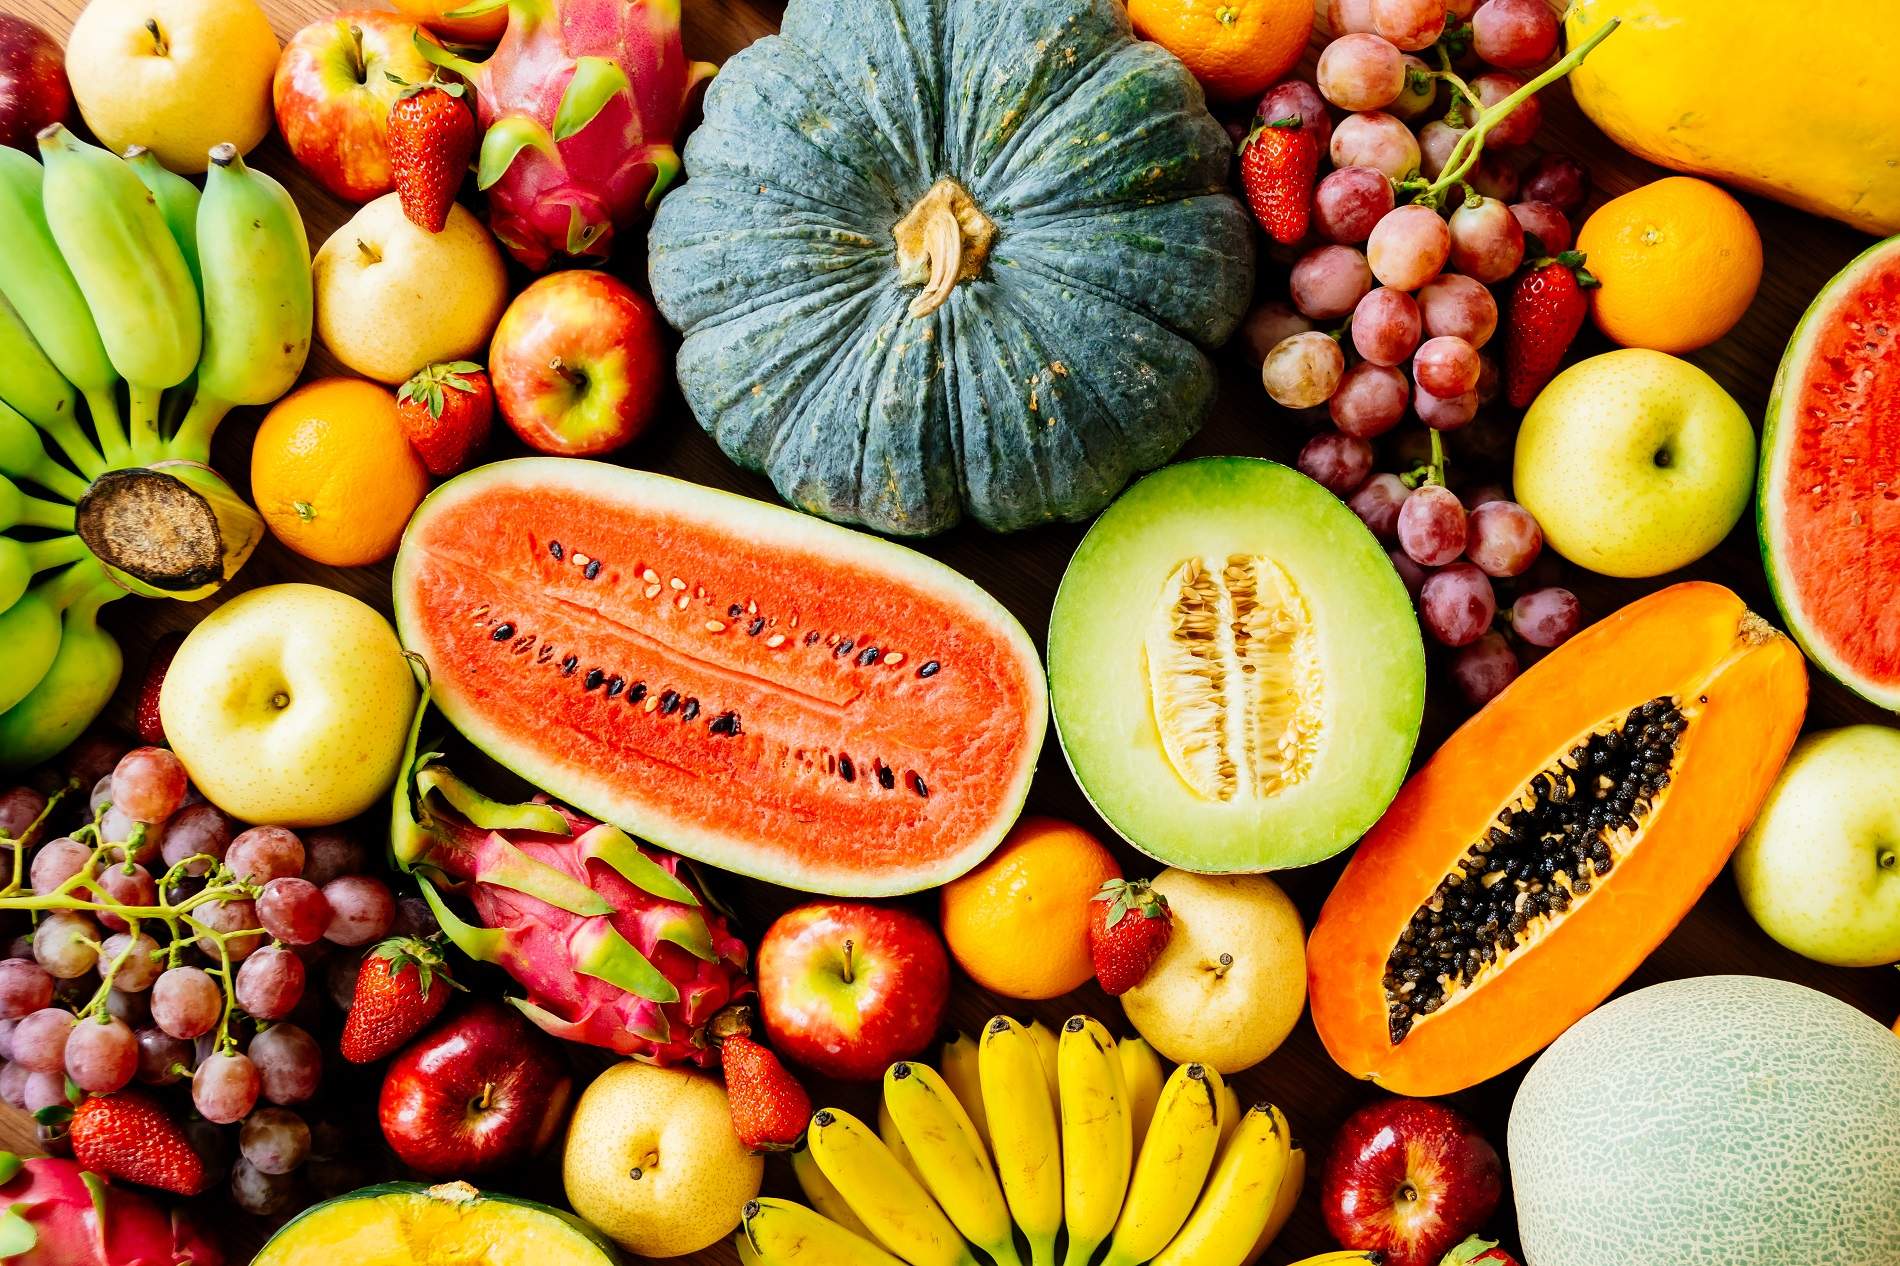 Quanta fruita i verdura cal menjar al dia? Adeu a les 5 racions diàries